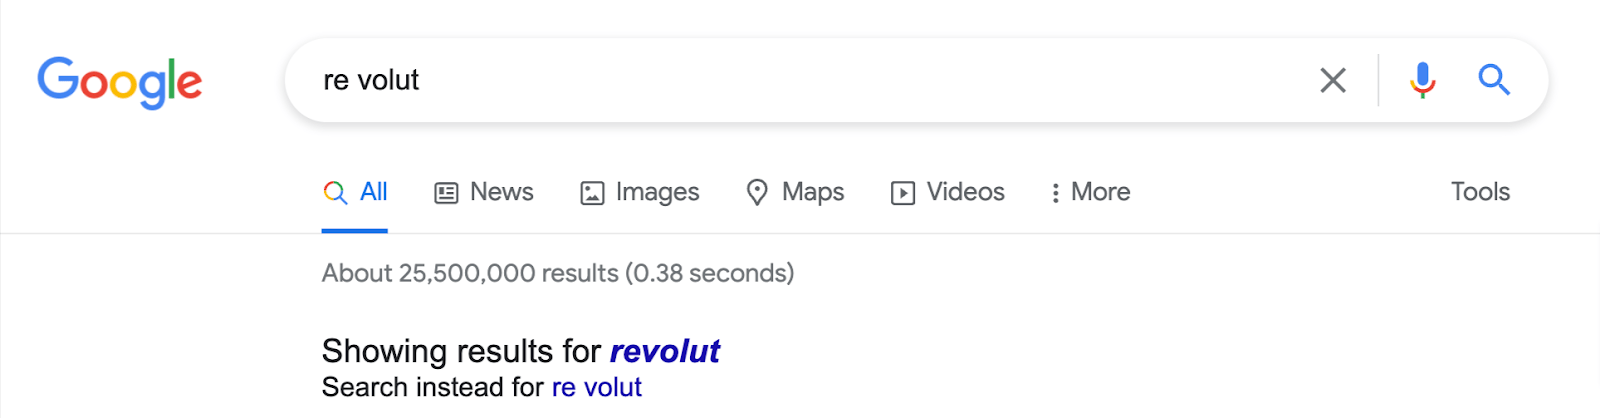 Napačno črkovanje od "revolucija" kot "re volut";  Google samodejno popravi izraz in nakaže, da bo prikazal rezultate za pravilno črkovano ime